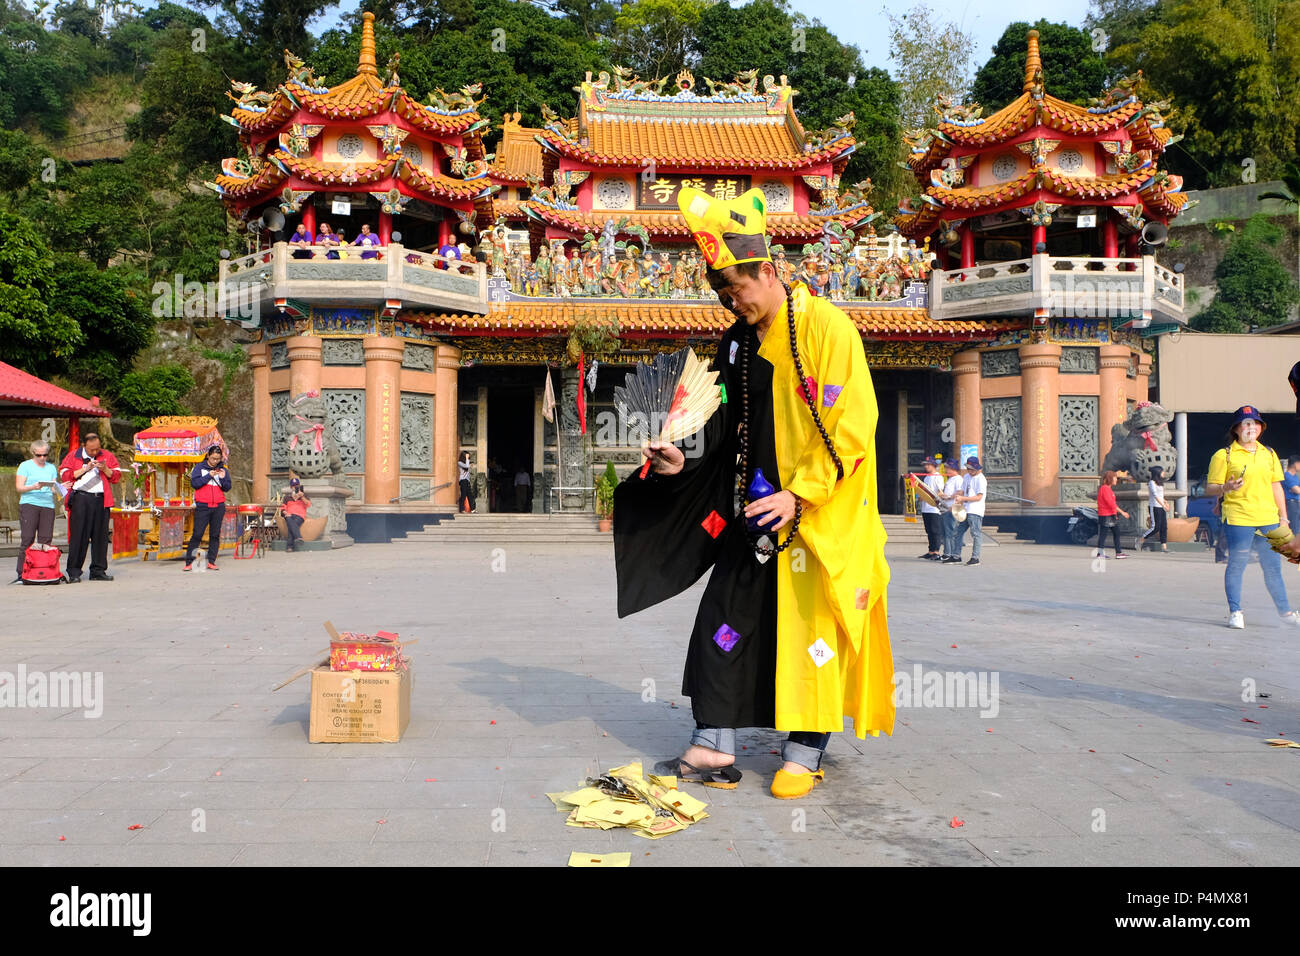 Le moine bouddhiste à l'occasion d'une cérémonie devant le Temple de Longyin Fanlu Canton, Taiwan - Buddhistischer Mönch bei einer Zeremonie vor dem Longyin Tempel dans Fanlu Canton, Taiwan Banque D'Images